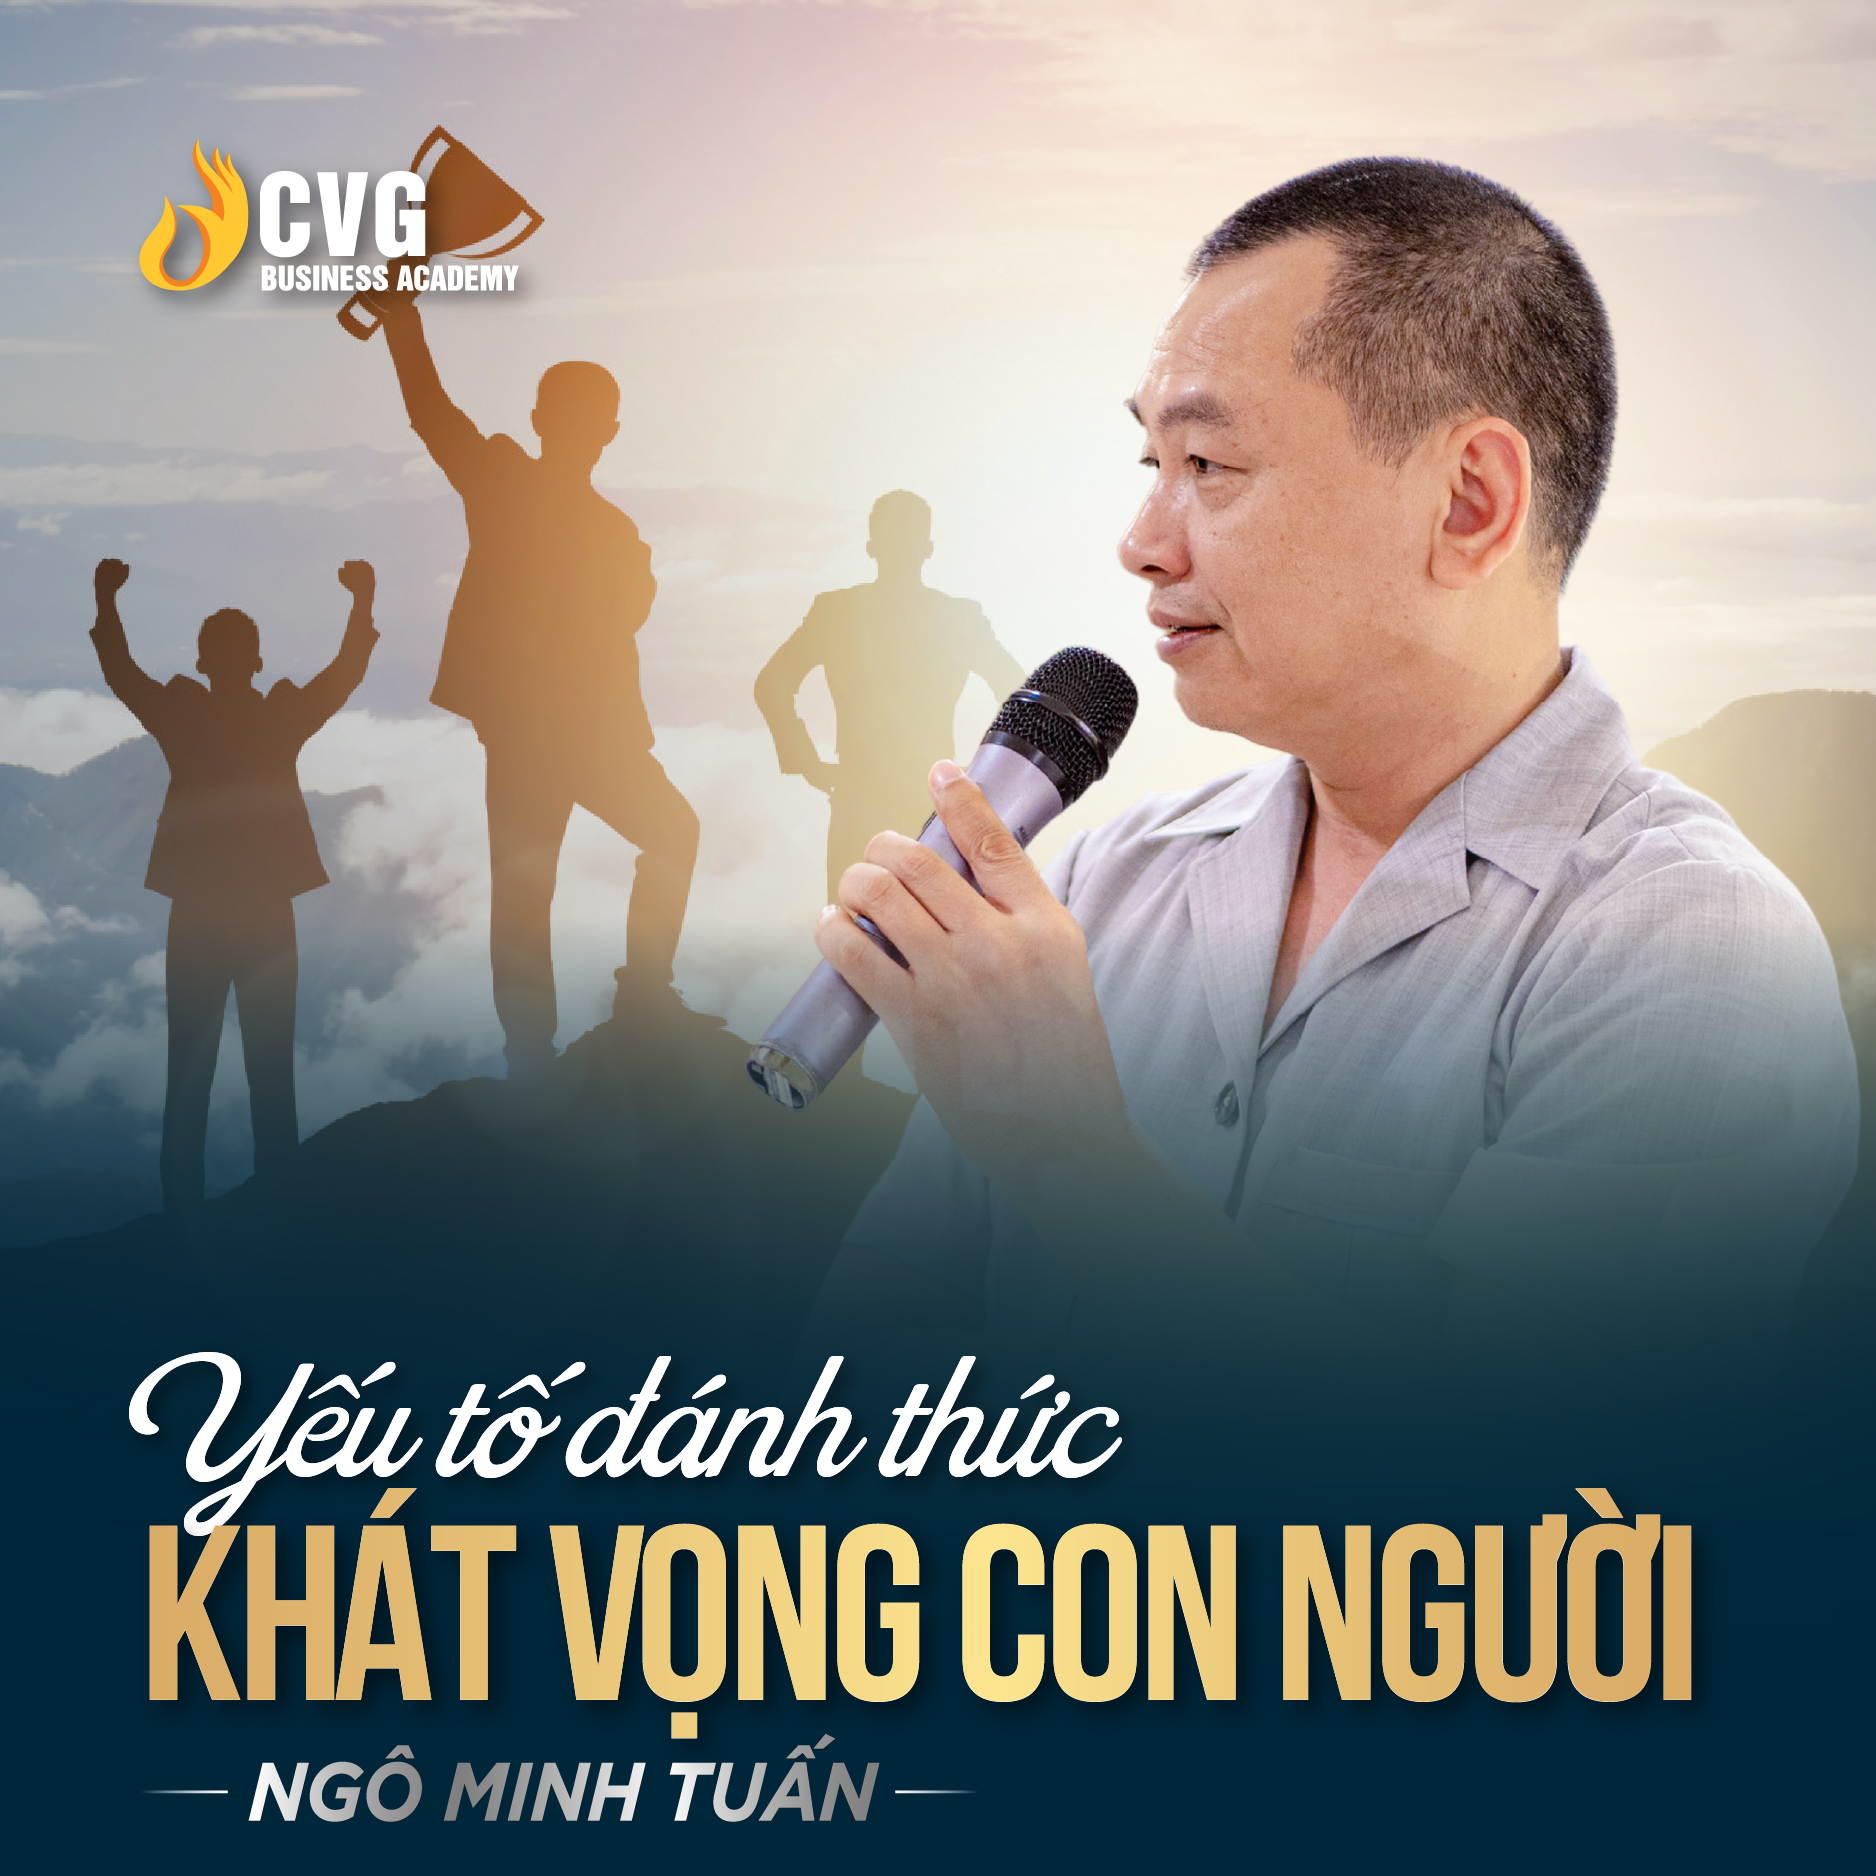 YẾU TỐ ĐÁNH THỨC KHÁT VỌNG CON NGƯỜI | Ngô Minh Tuấn | Học Viện CEO Việt Nam Global